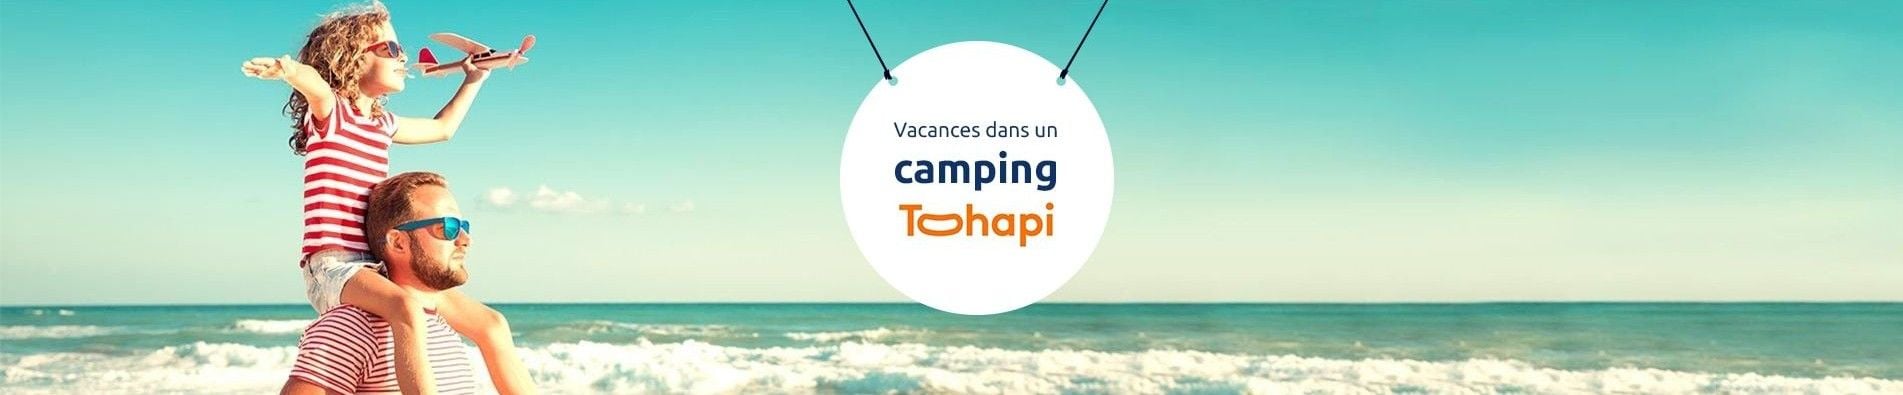 Vacances en camping Tohapi